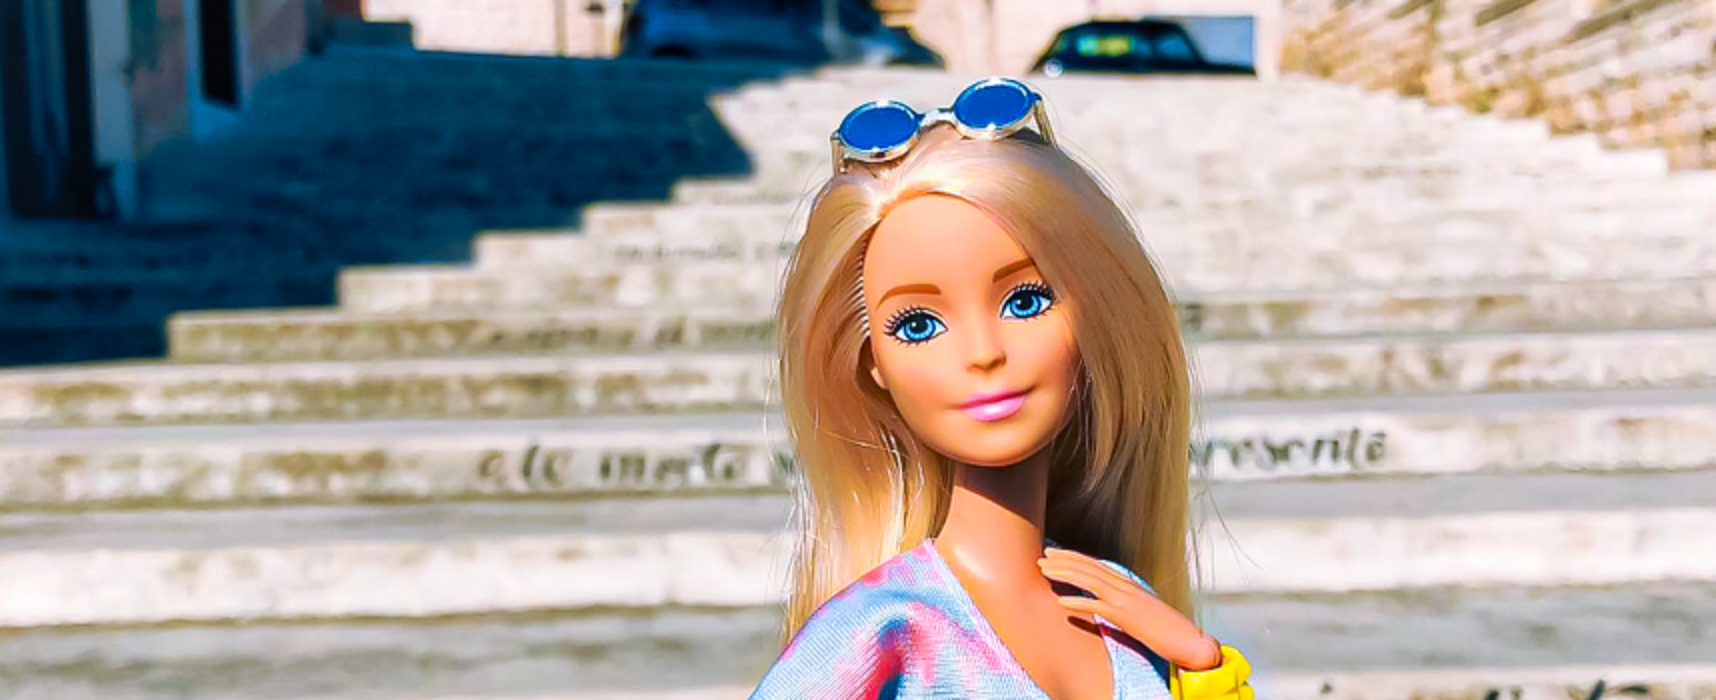 Le bellezze di Bisceglie scenario del progetto “Barbie in Town”